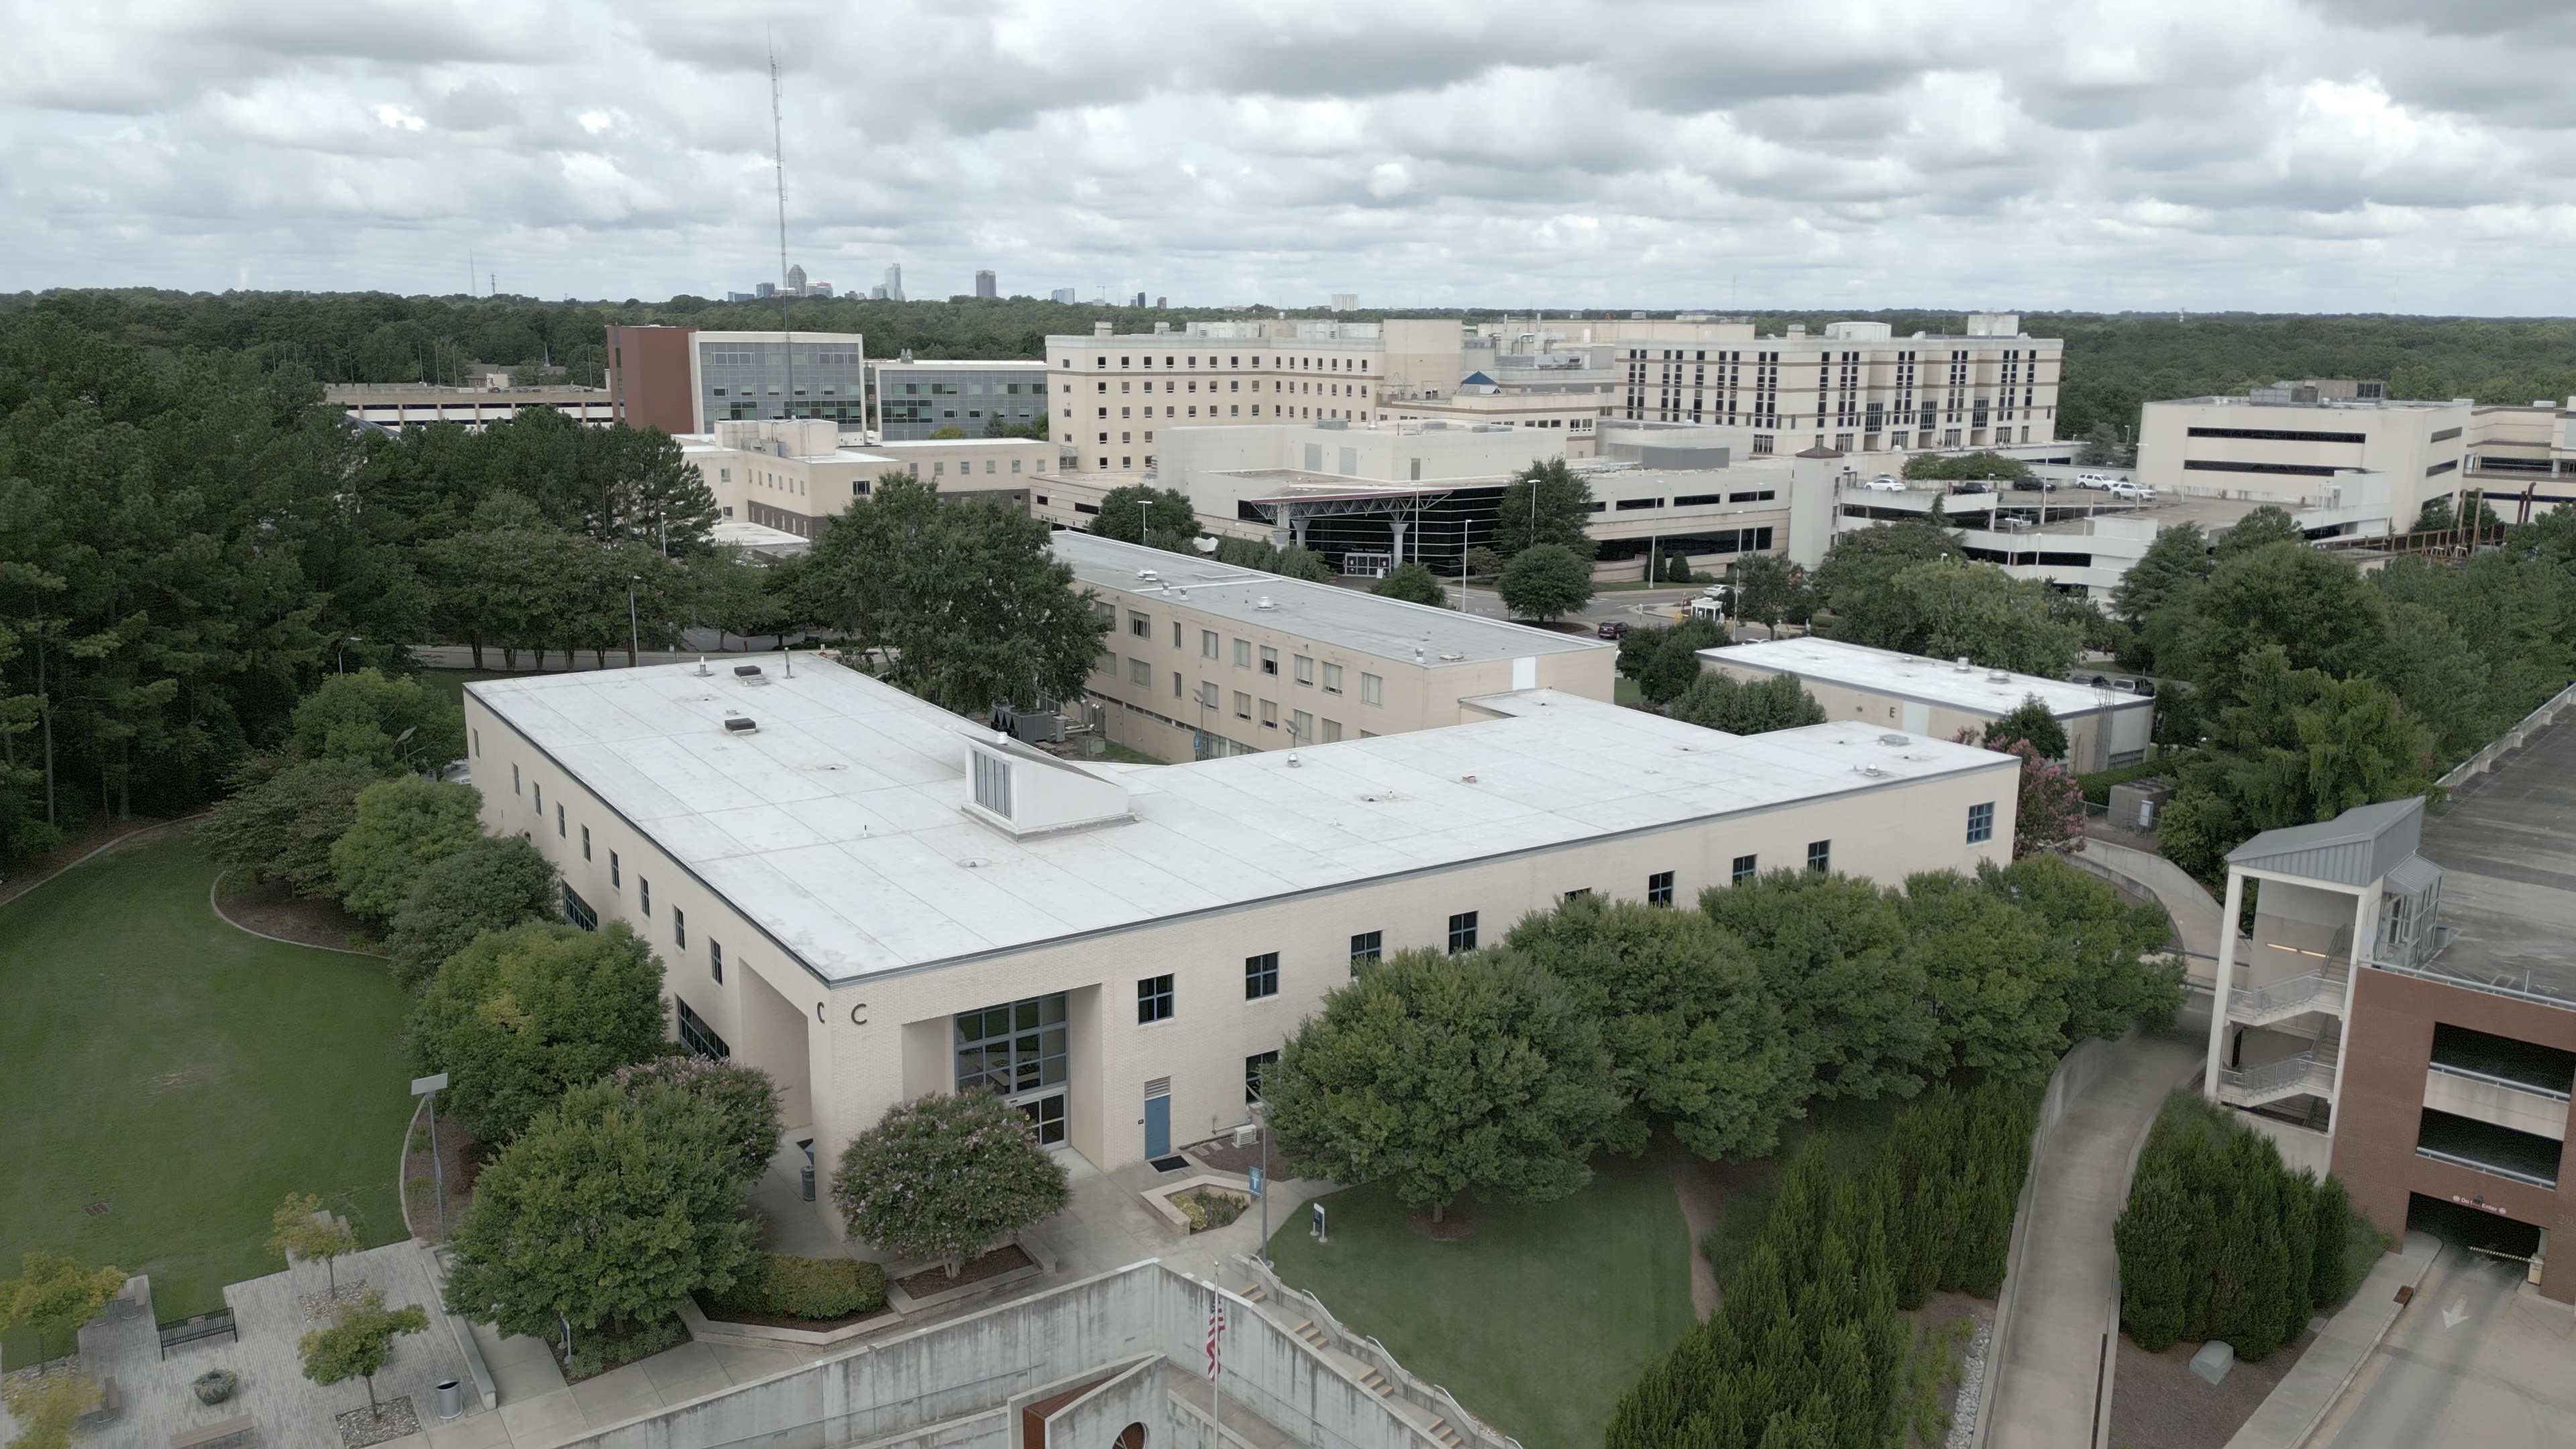 Perry Health Sciences Campus